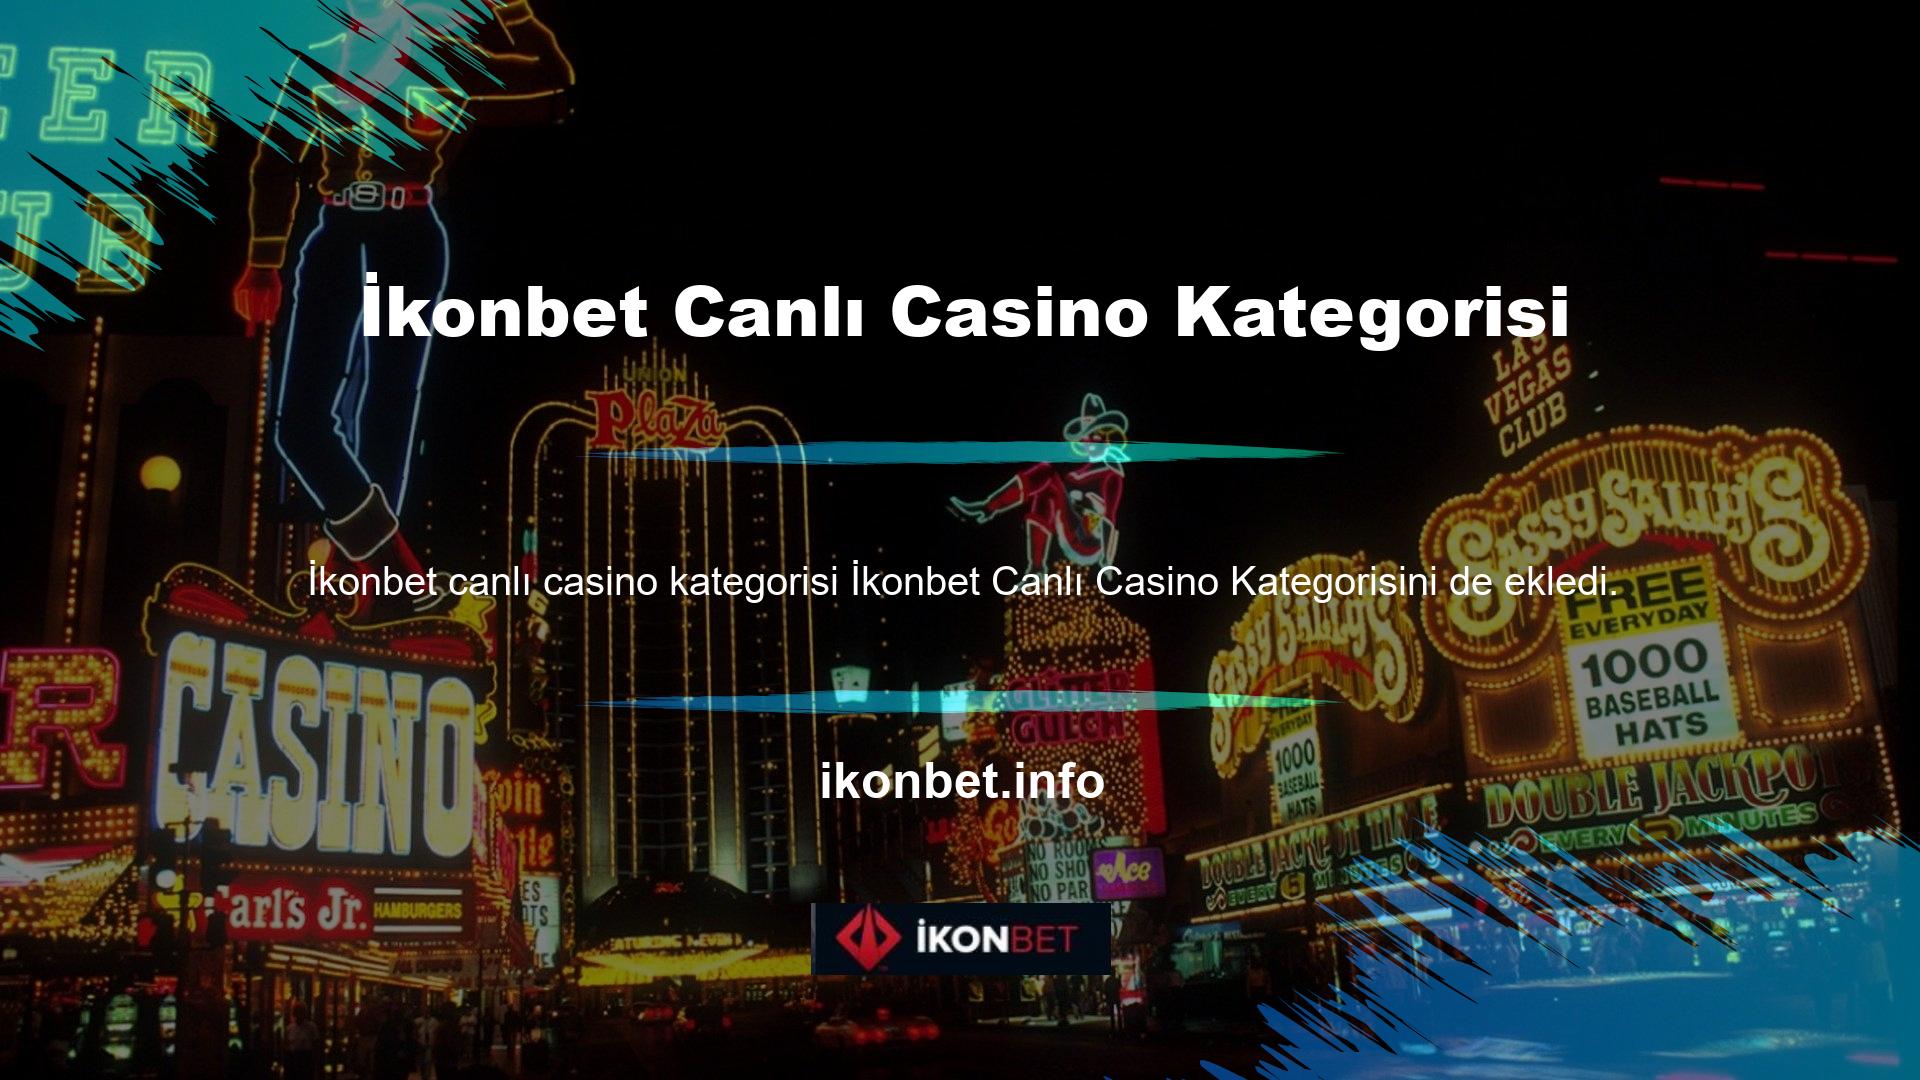 Canlı casino oyunları oynamak isteyen herkesin siteye kayıt olduktan sonra belirli bir yatırım yapması gerekmektedir